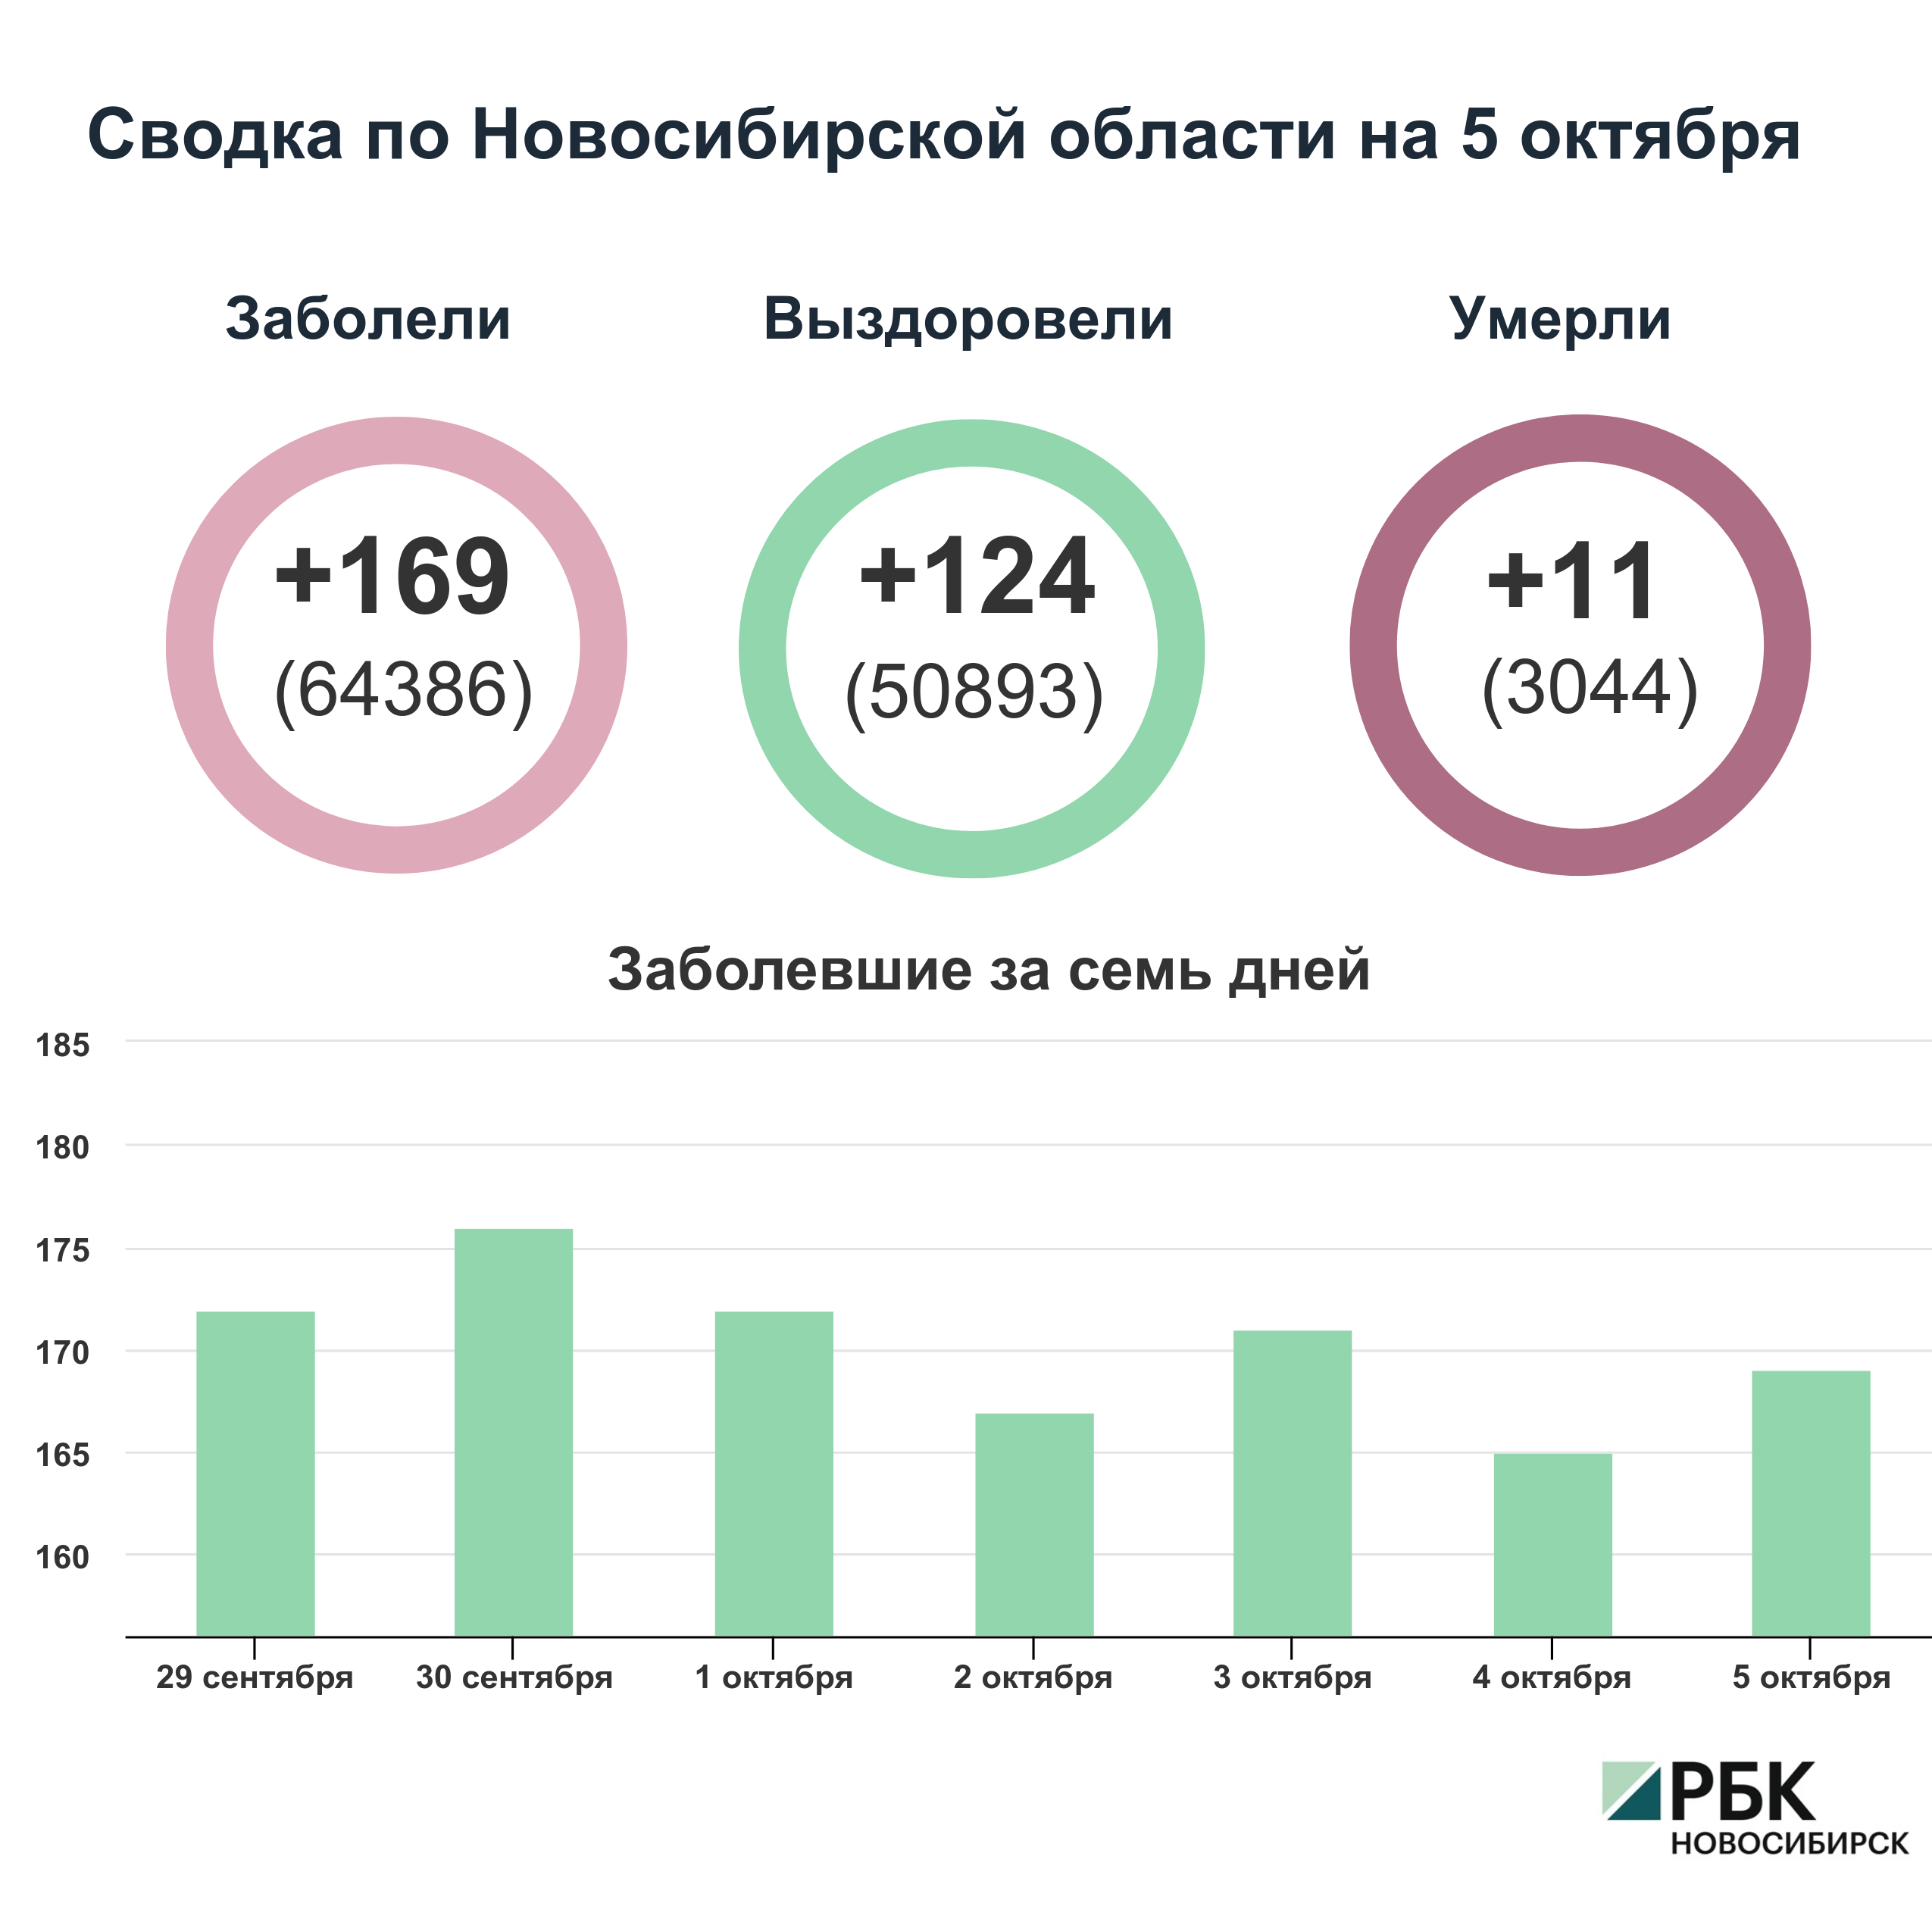 Коронавирус в Новосибирске: сводка на 5 октября